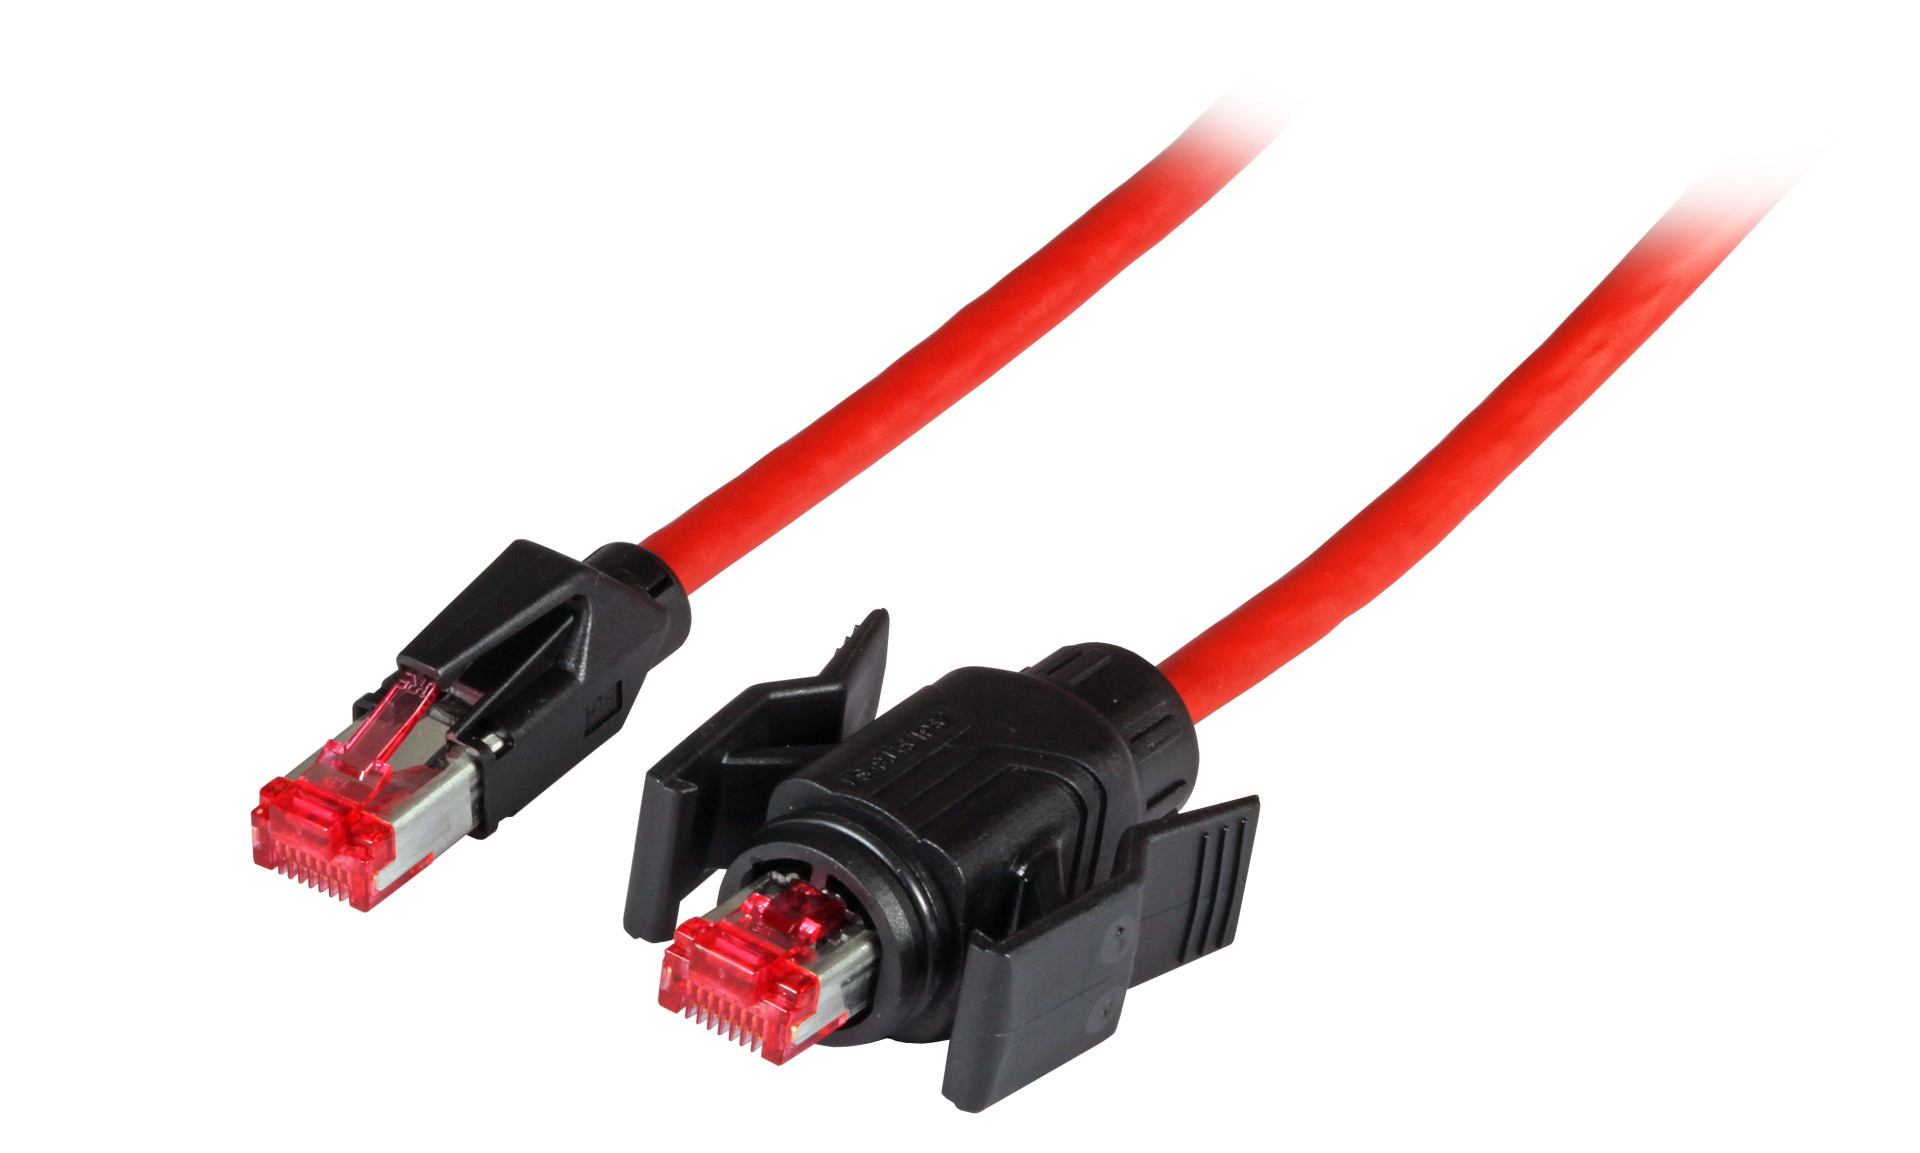 RJ45 Patch cable S/FTP, Cat.6A, IP67/TM21 / TM21, PUR, for 53730.1V2, 1m